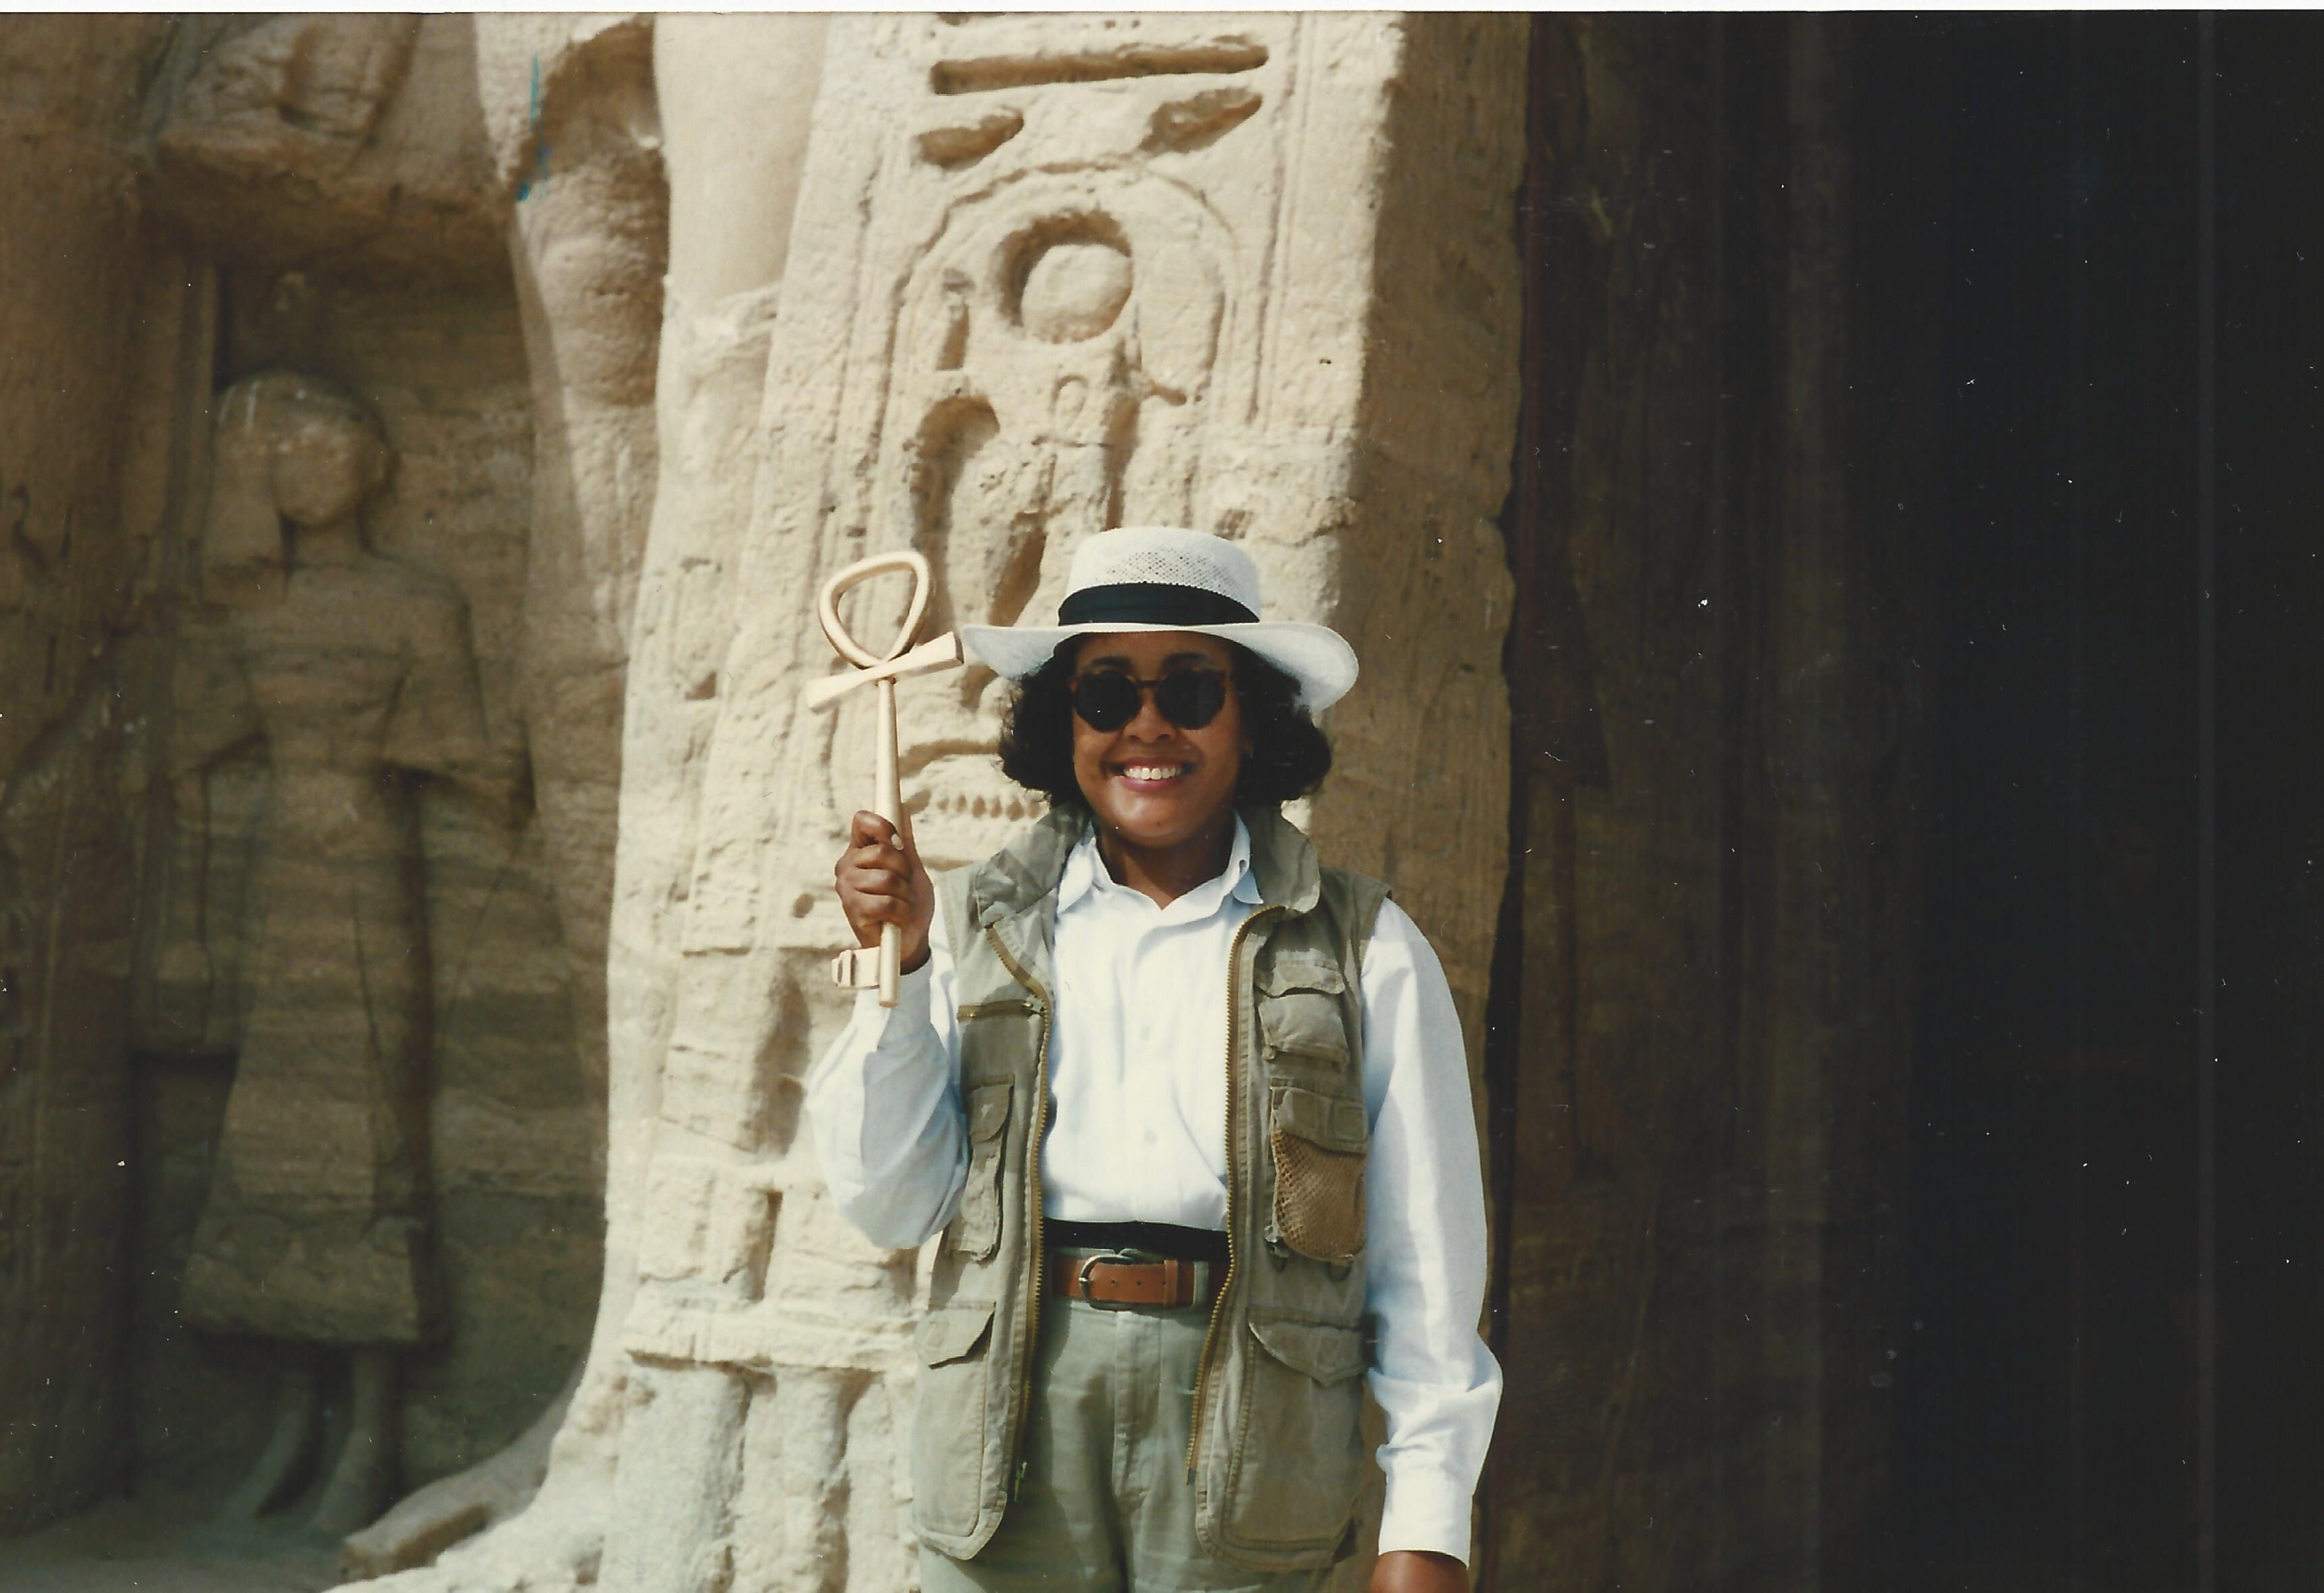 Gail Campbell Woolley w Egipcie , 1996. Świątynia Abu Simbel. Gail trzyma ankh lub symbol "klucza życia".